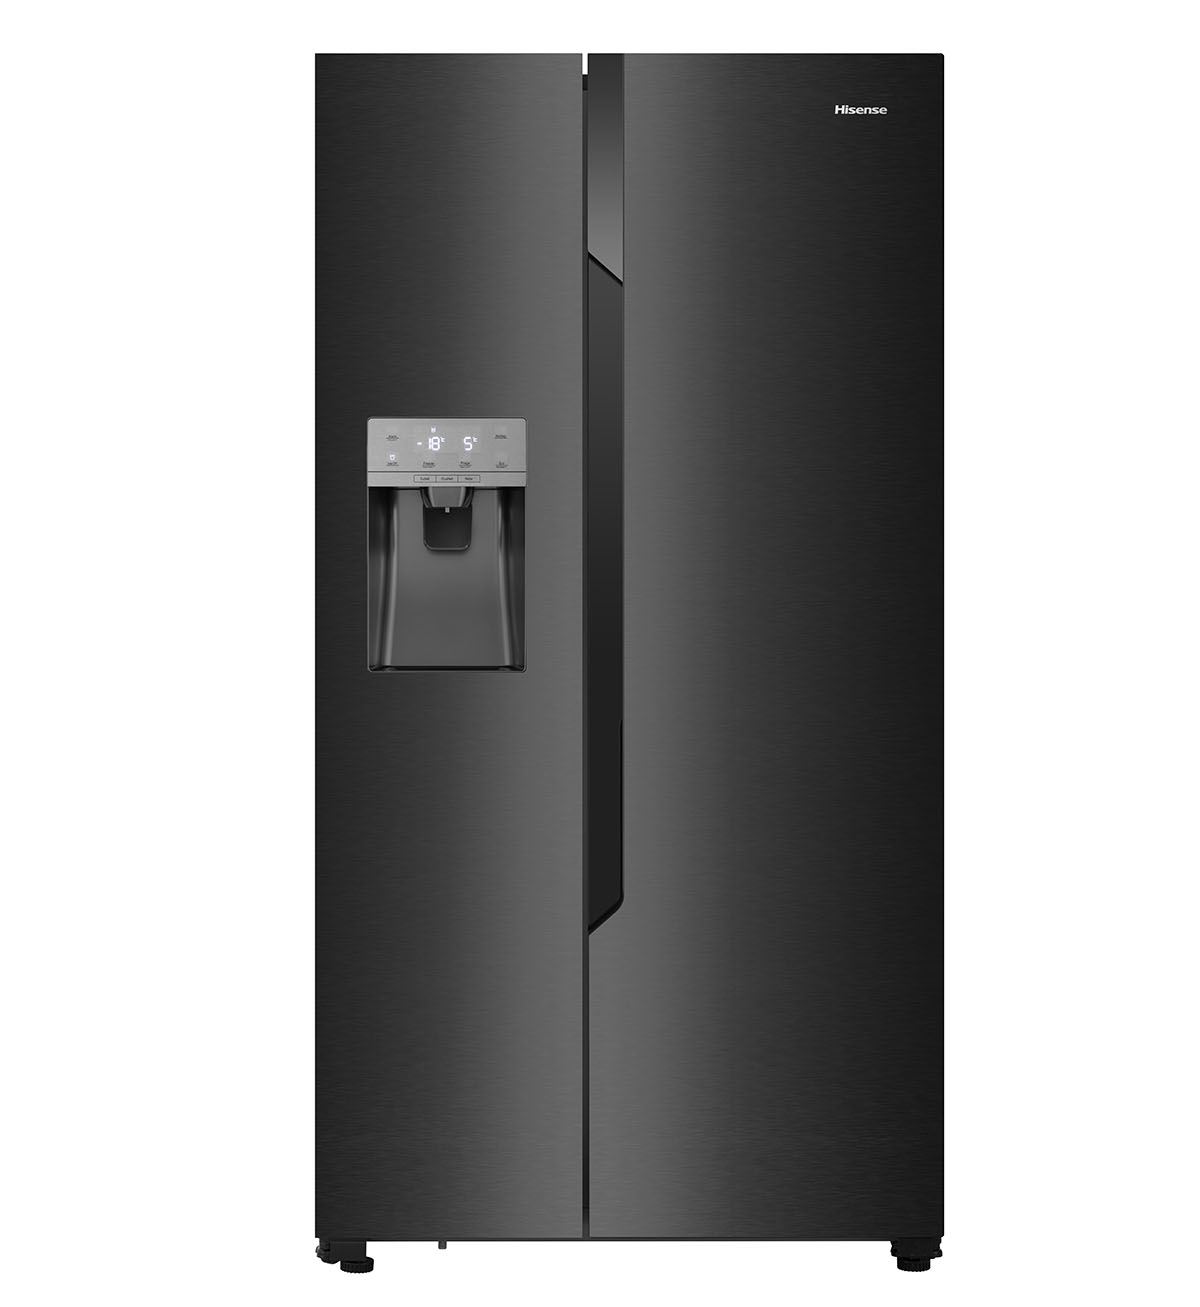 seco desbloquear Reverberación Hisense RS694N4TF2 de tipo A++, un frigorífico muy eficiente y completo